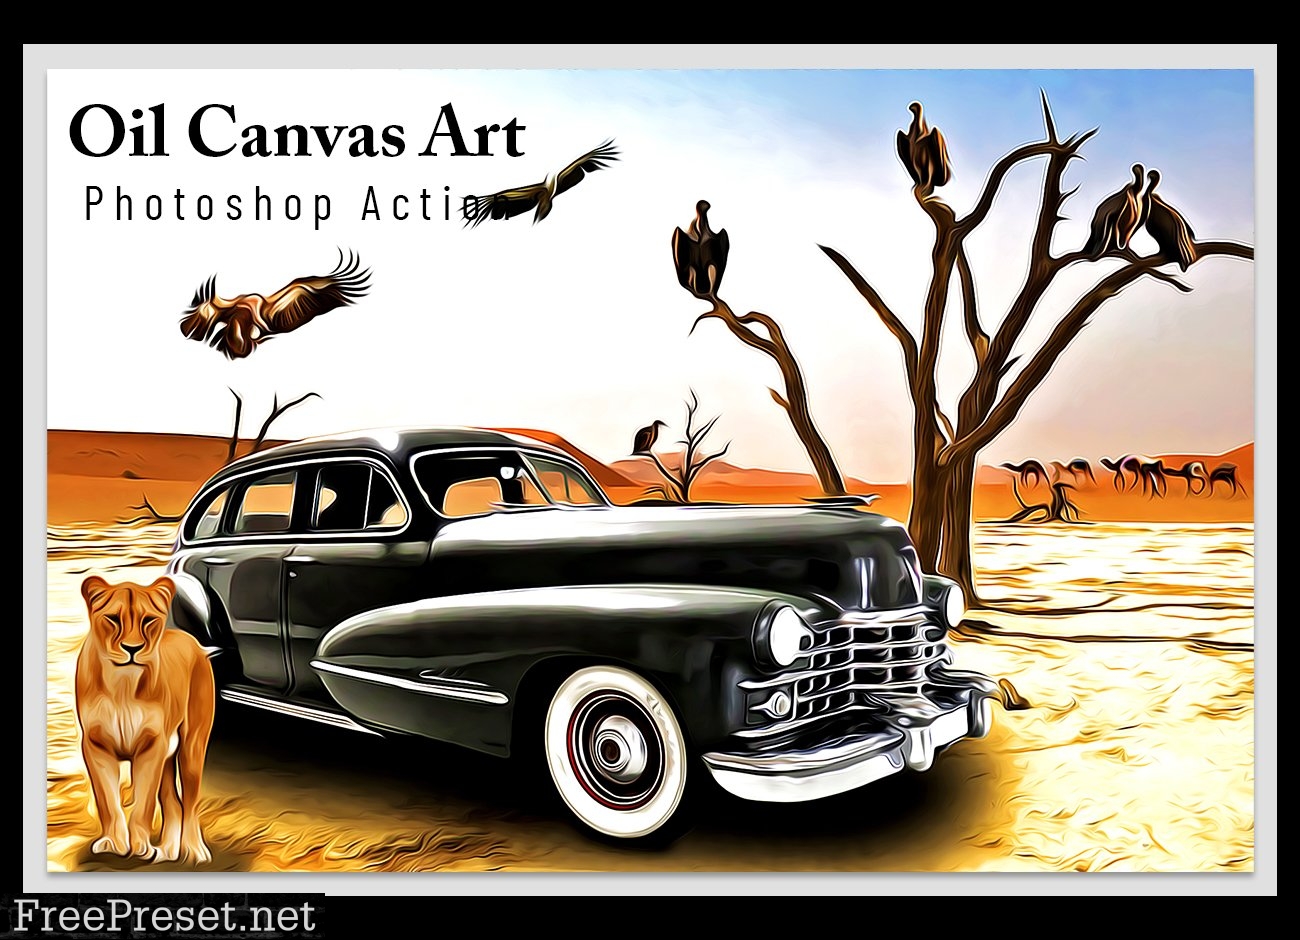 Oil Canvas Art Photoshop Action 6802764